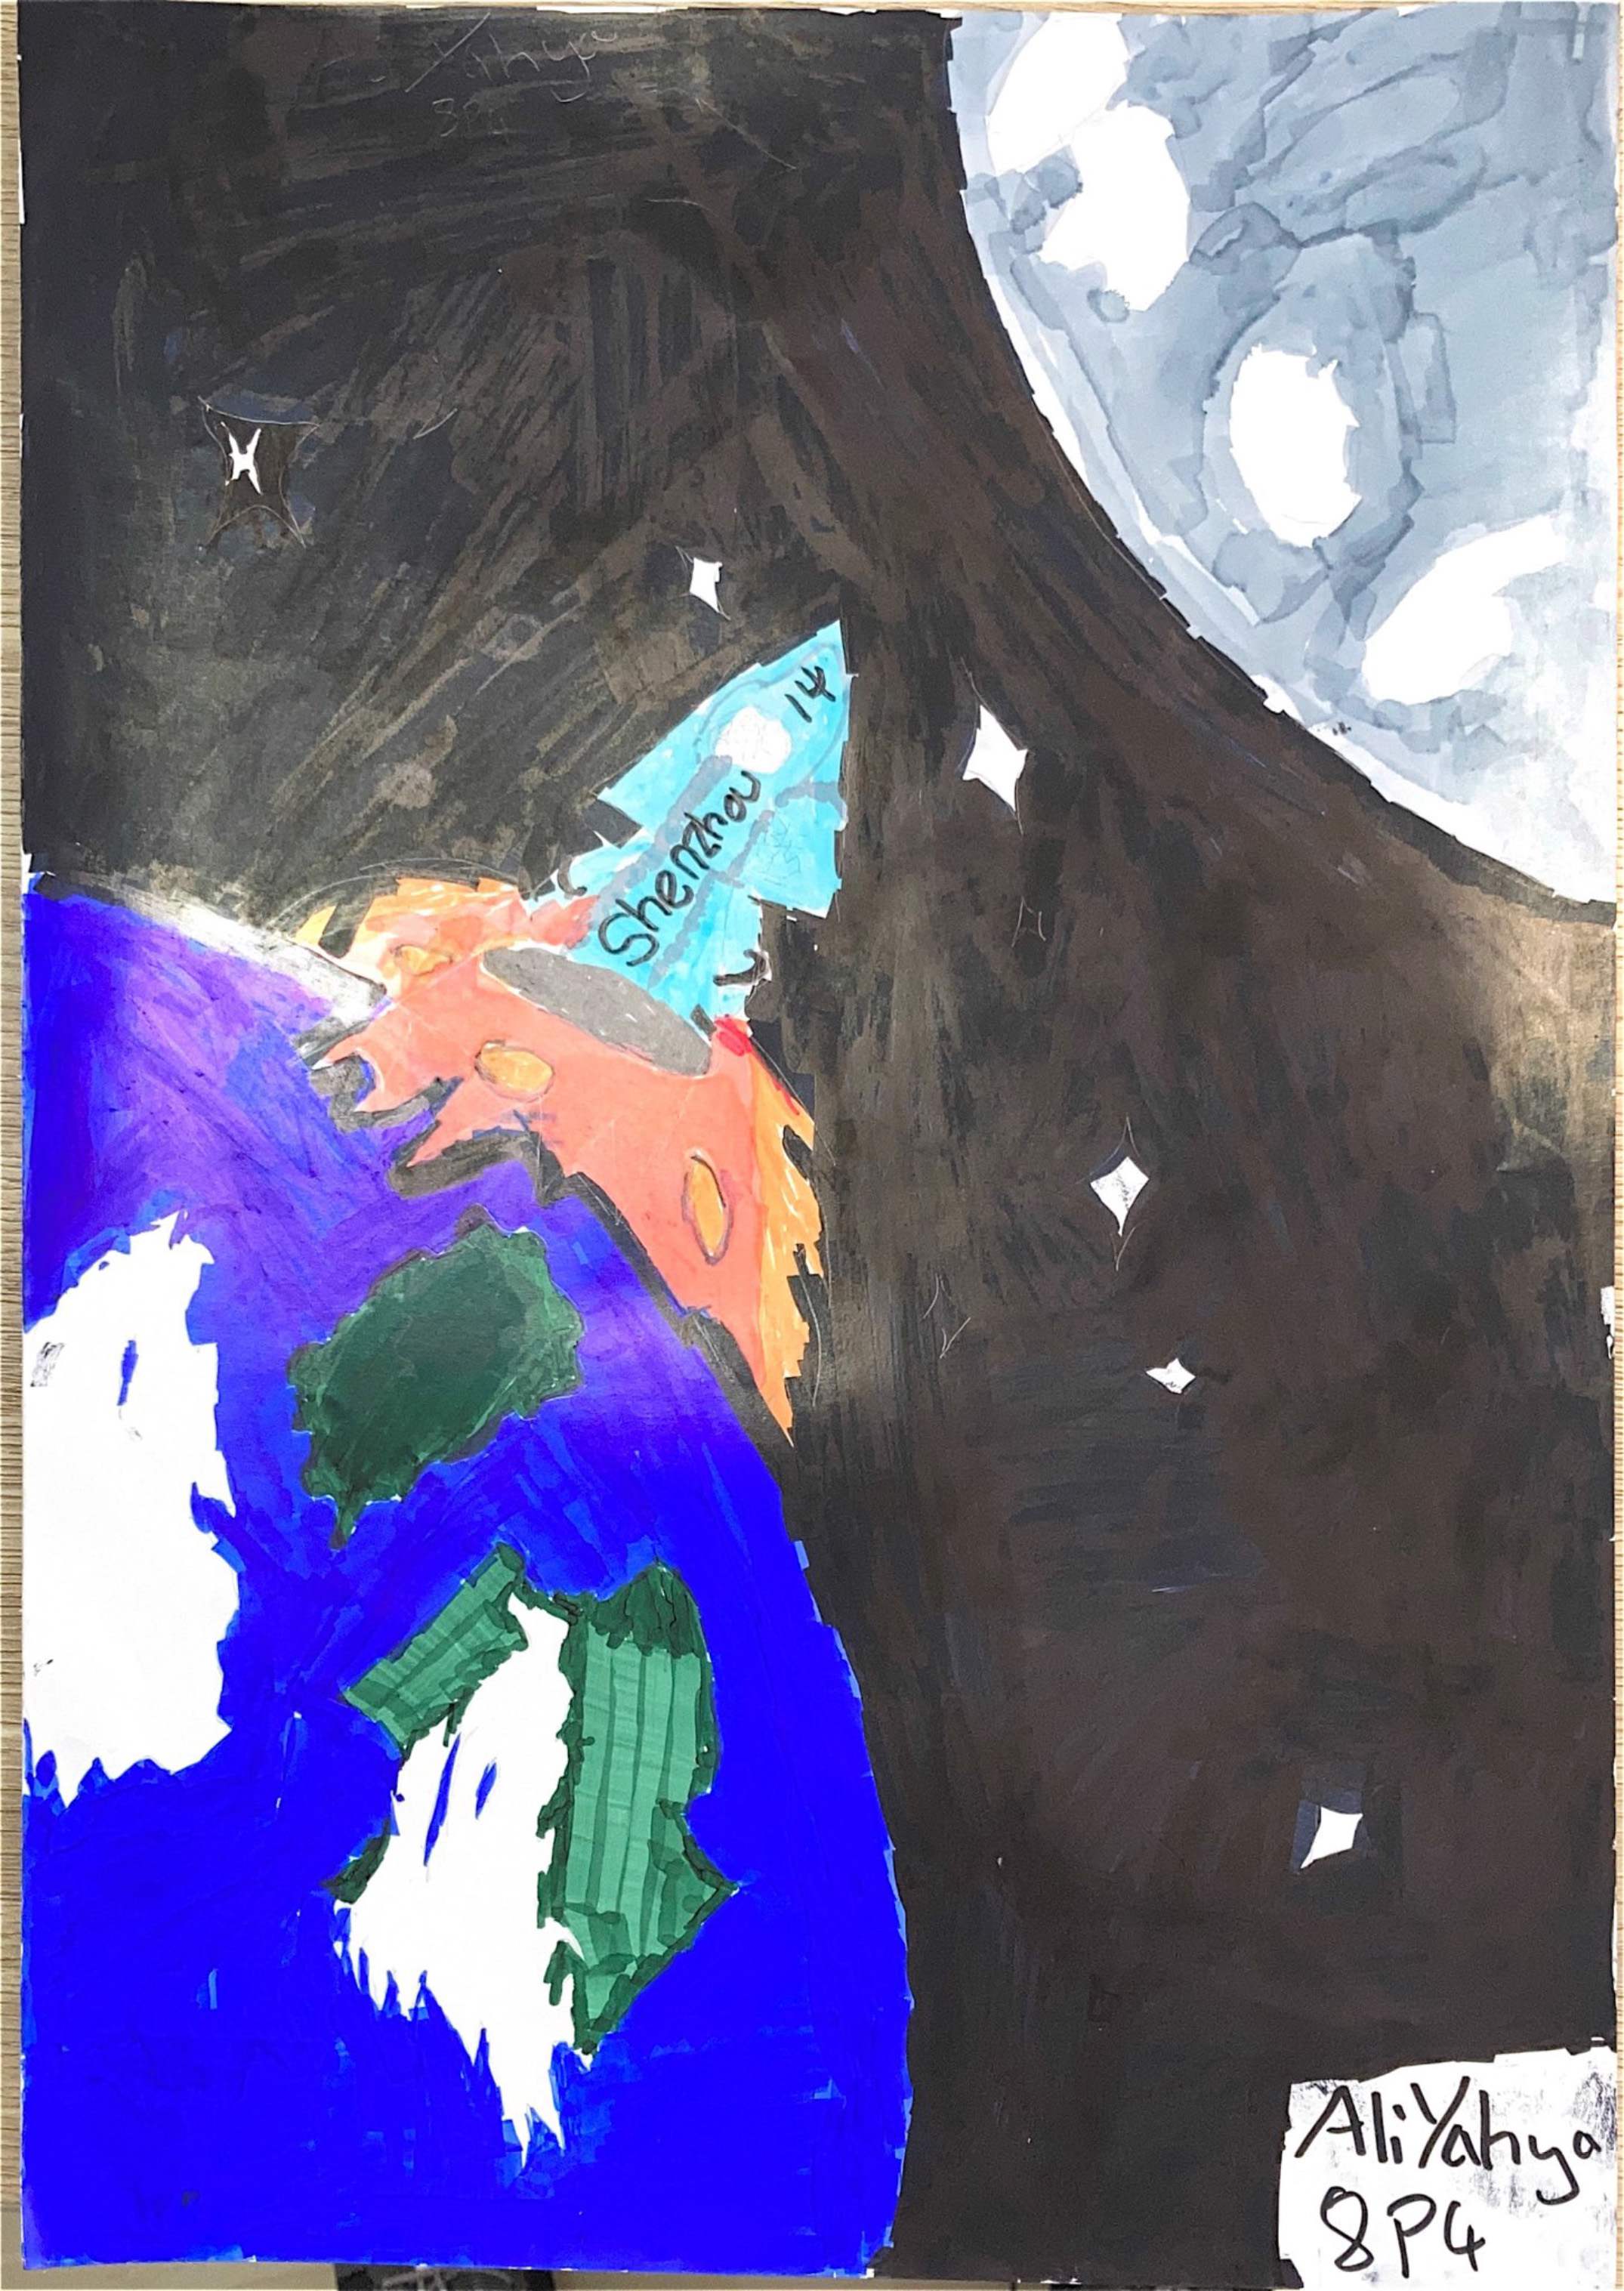 v航天日绘画作品《从蔚蓝星球出发》,肯尼亚阿里·雅雅（Ali Yahya）